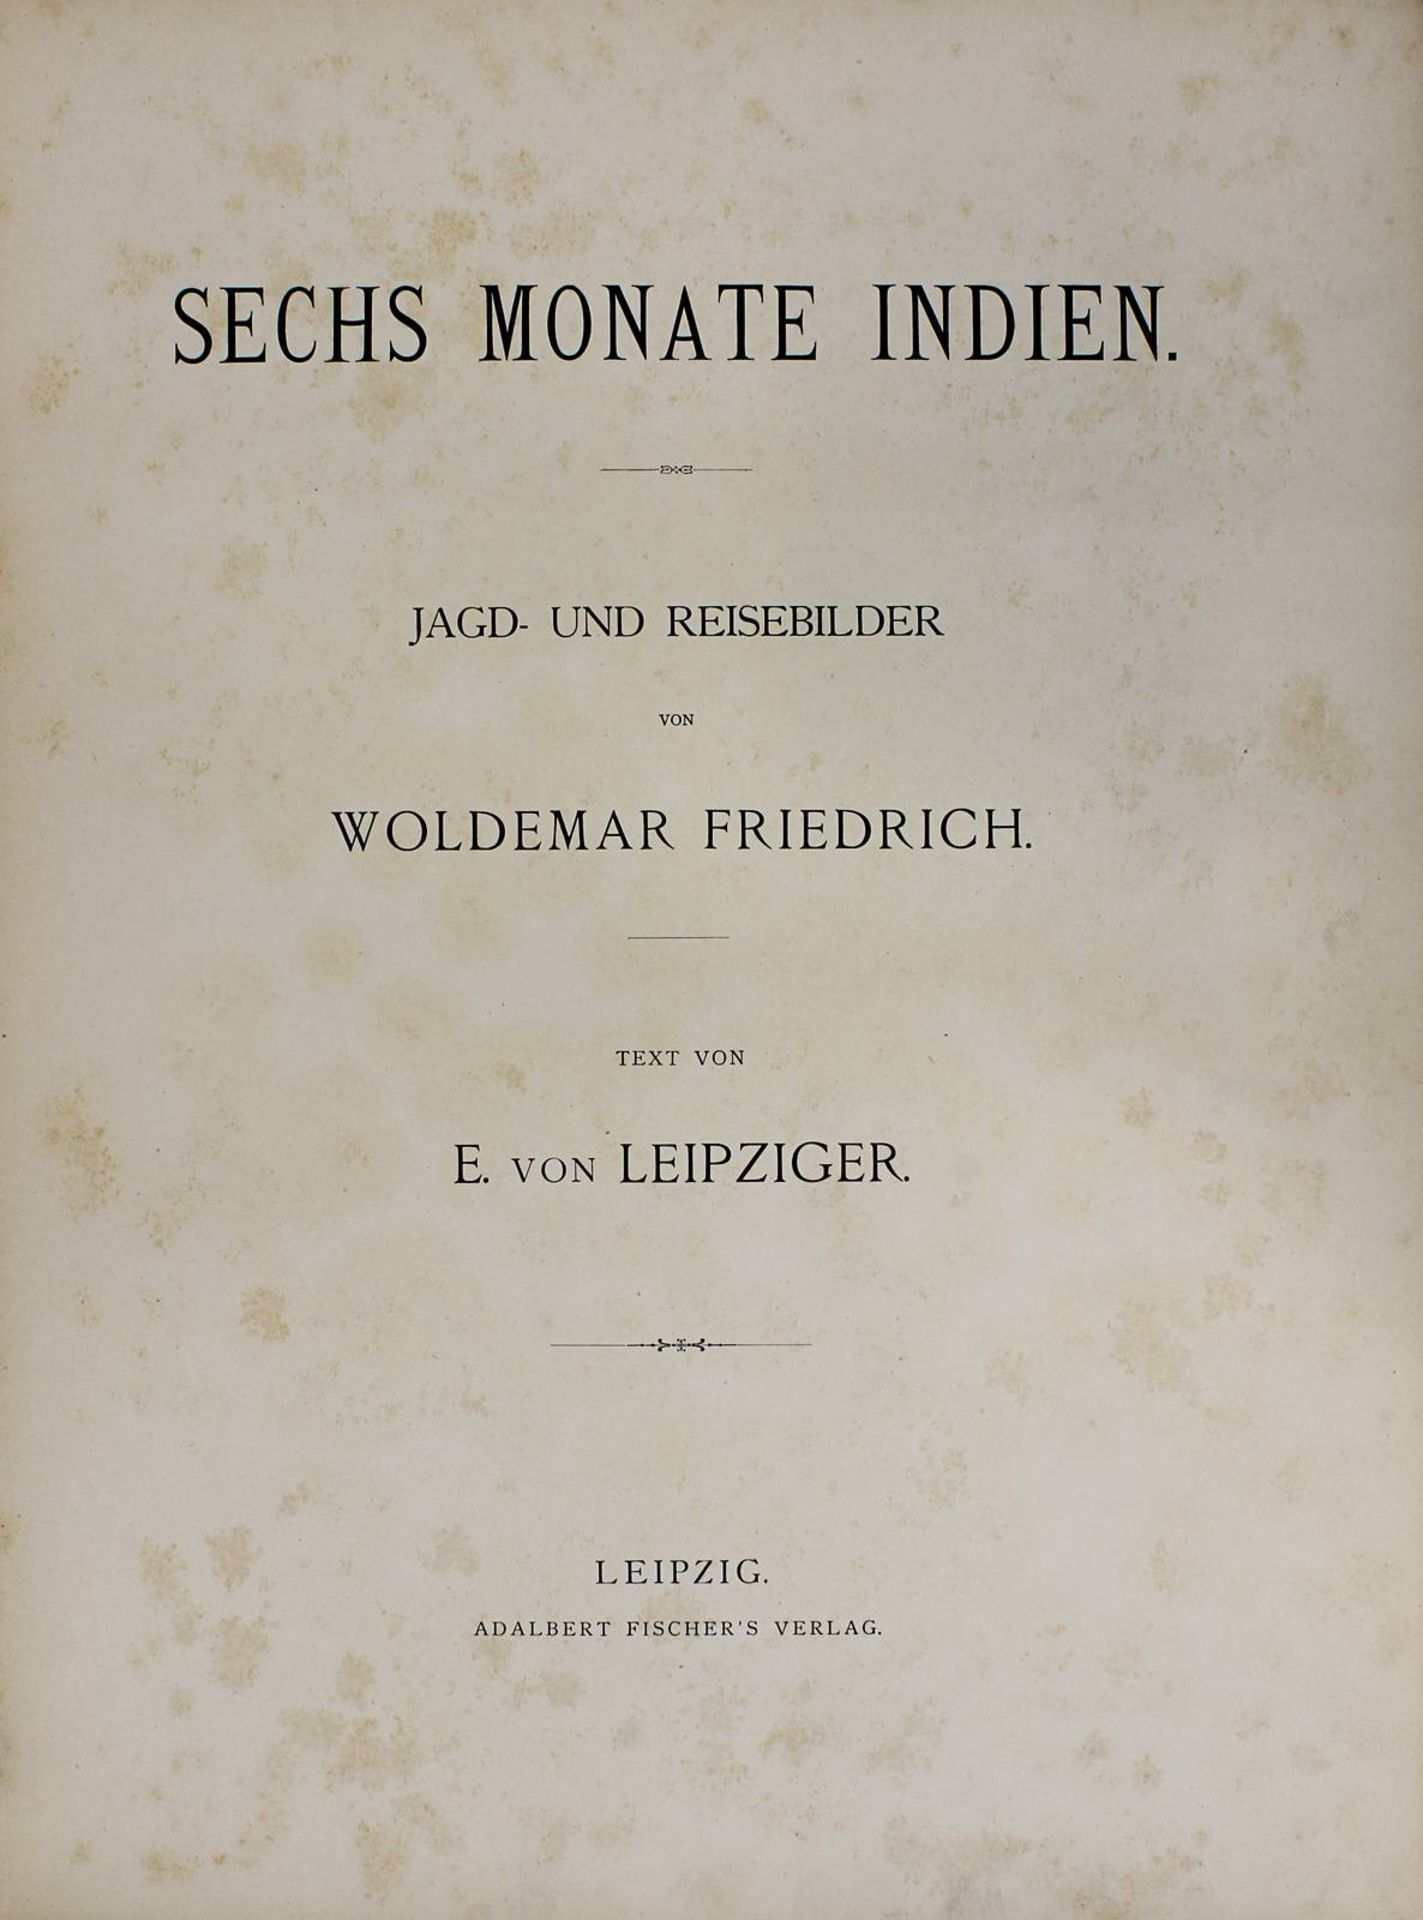 Friedrich, Woldemar u. von Leipziger, E. "Sechs Monate Indien, Jagd- und Reisebilder", Leipzig